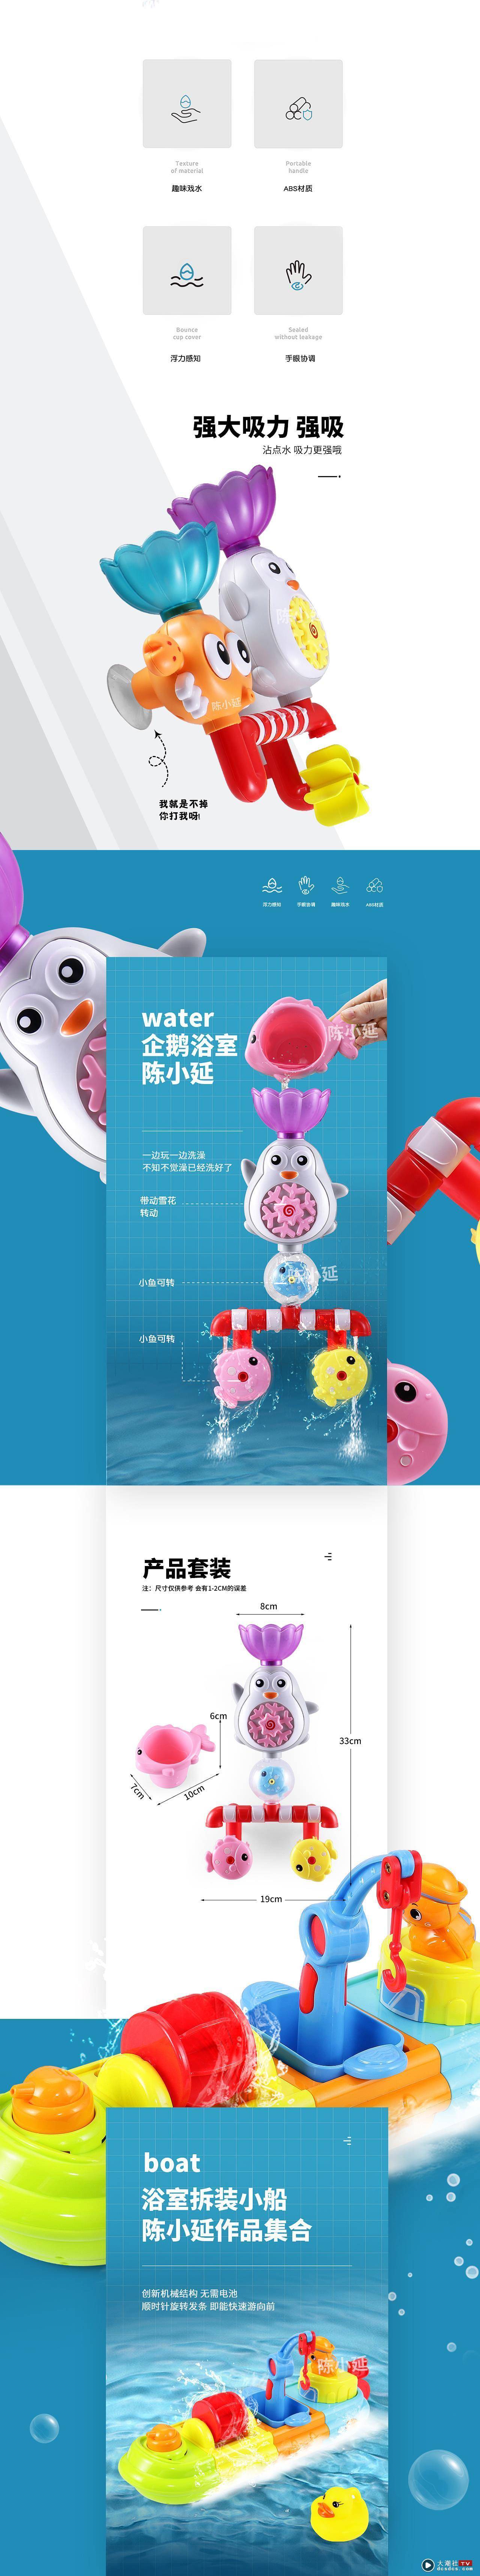 天猫/淘宝/京东/澄海玩具详情页设计 母婴系列